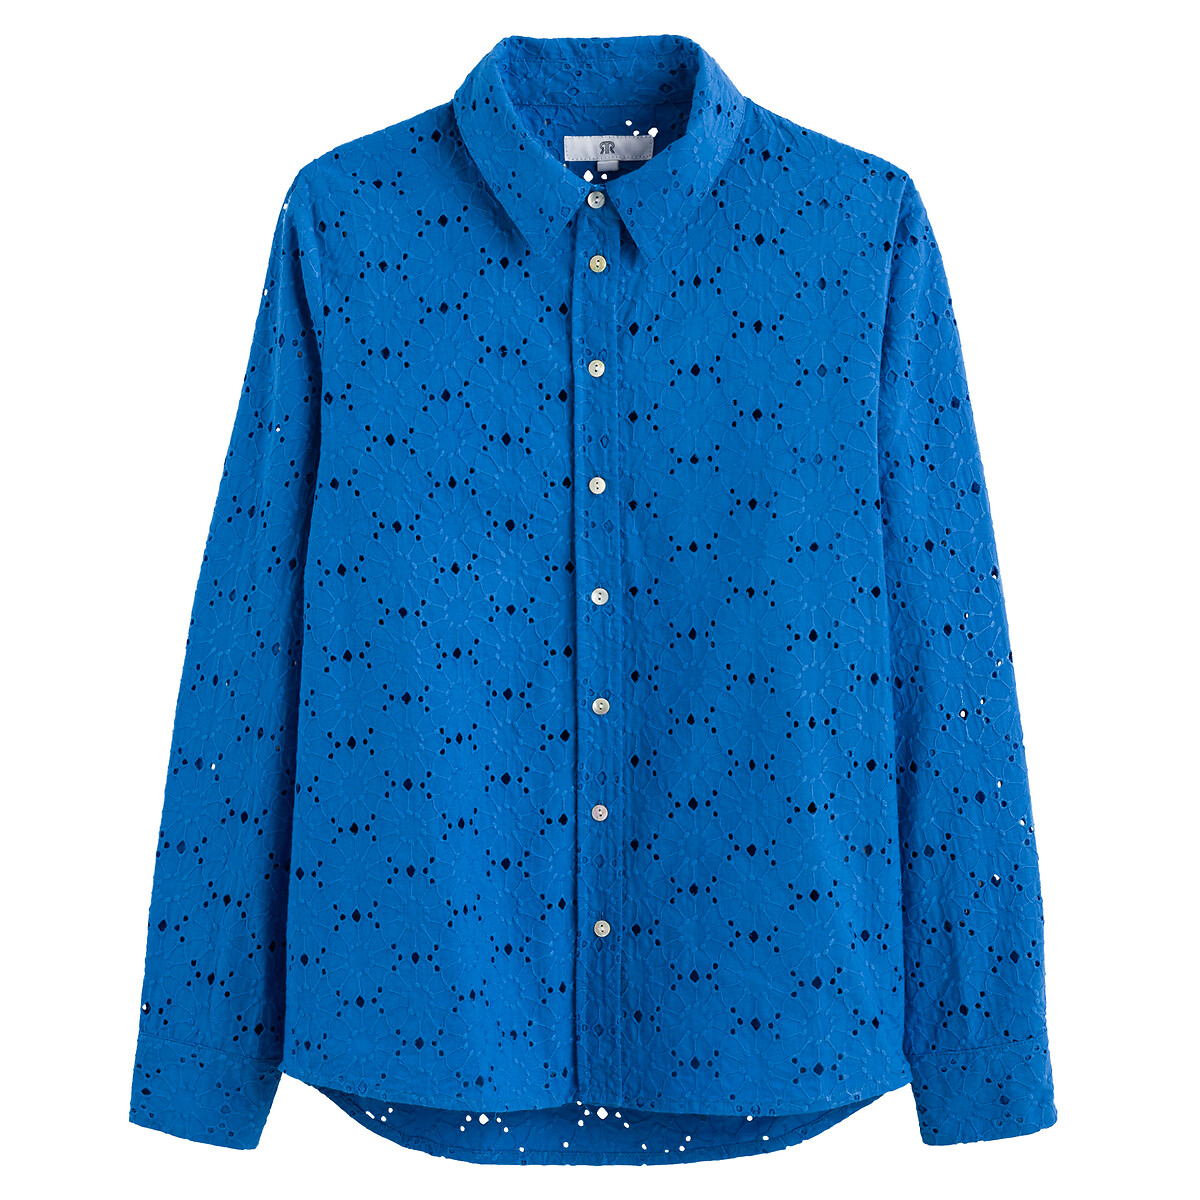 Рубашка С длинными рукавами из английской вышивк 48 (FR) - 54 (RUS) синий LaRedoute, размер 48 (FR) - 54 (RUS) Рубашка С длинными рукавами из английской вышивк 48 (FR) - 54 (RUS) синий - фото 5